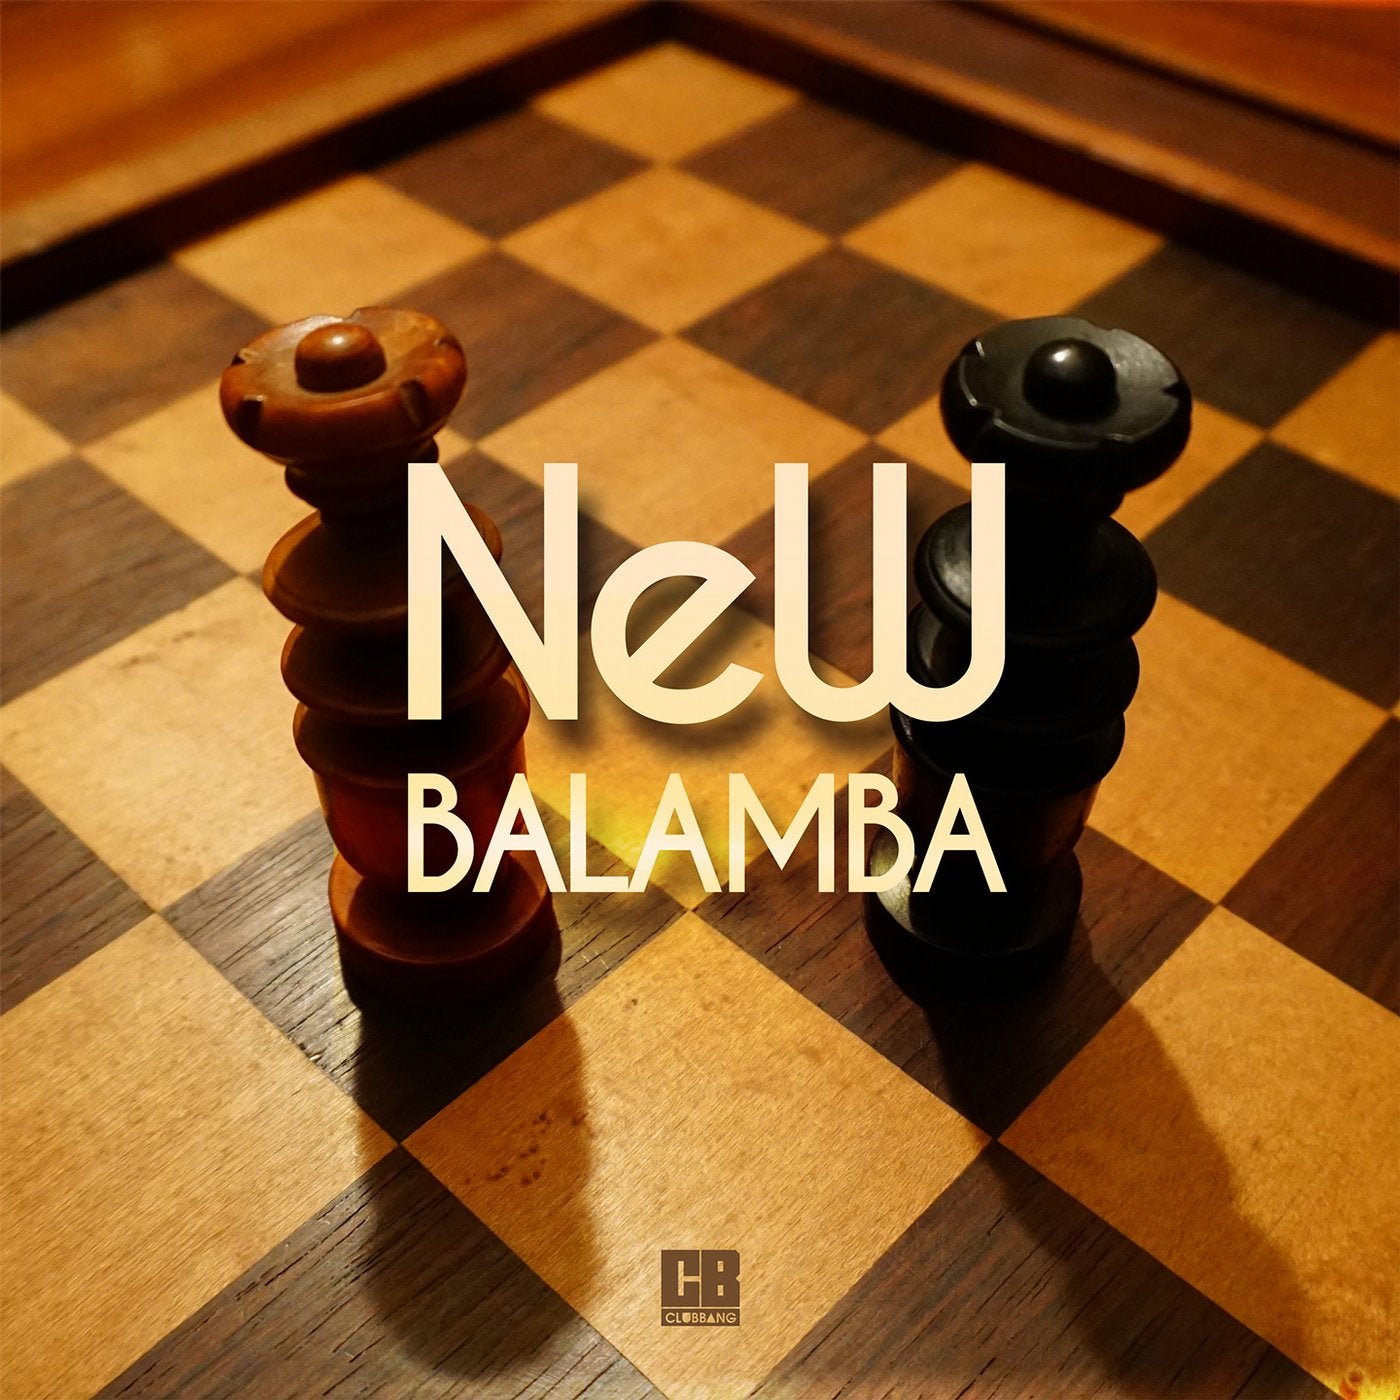 Balamba